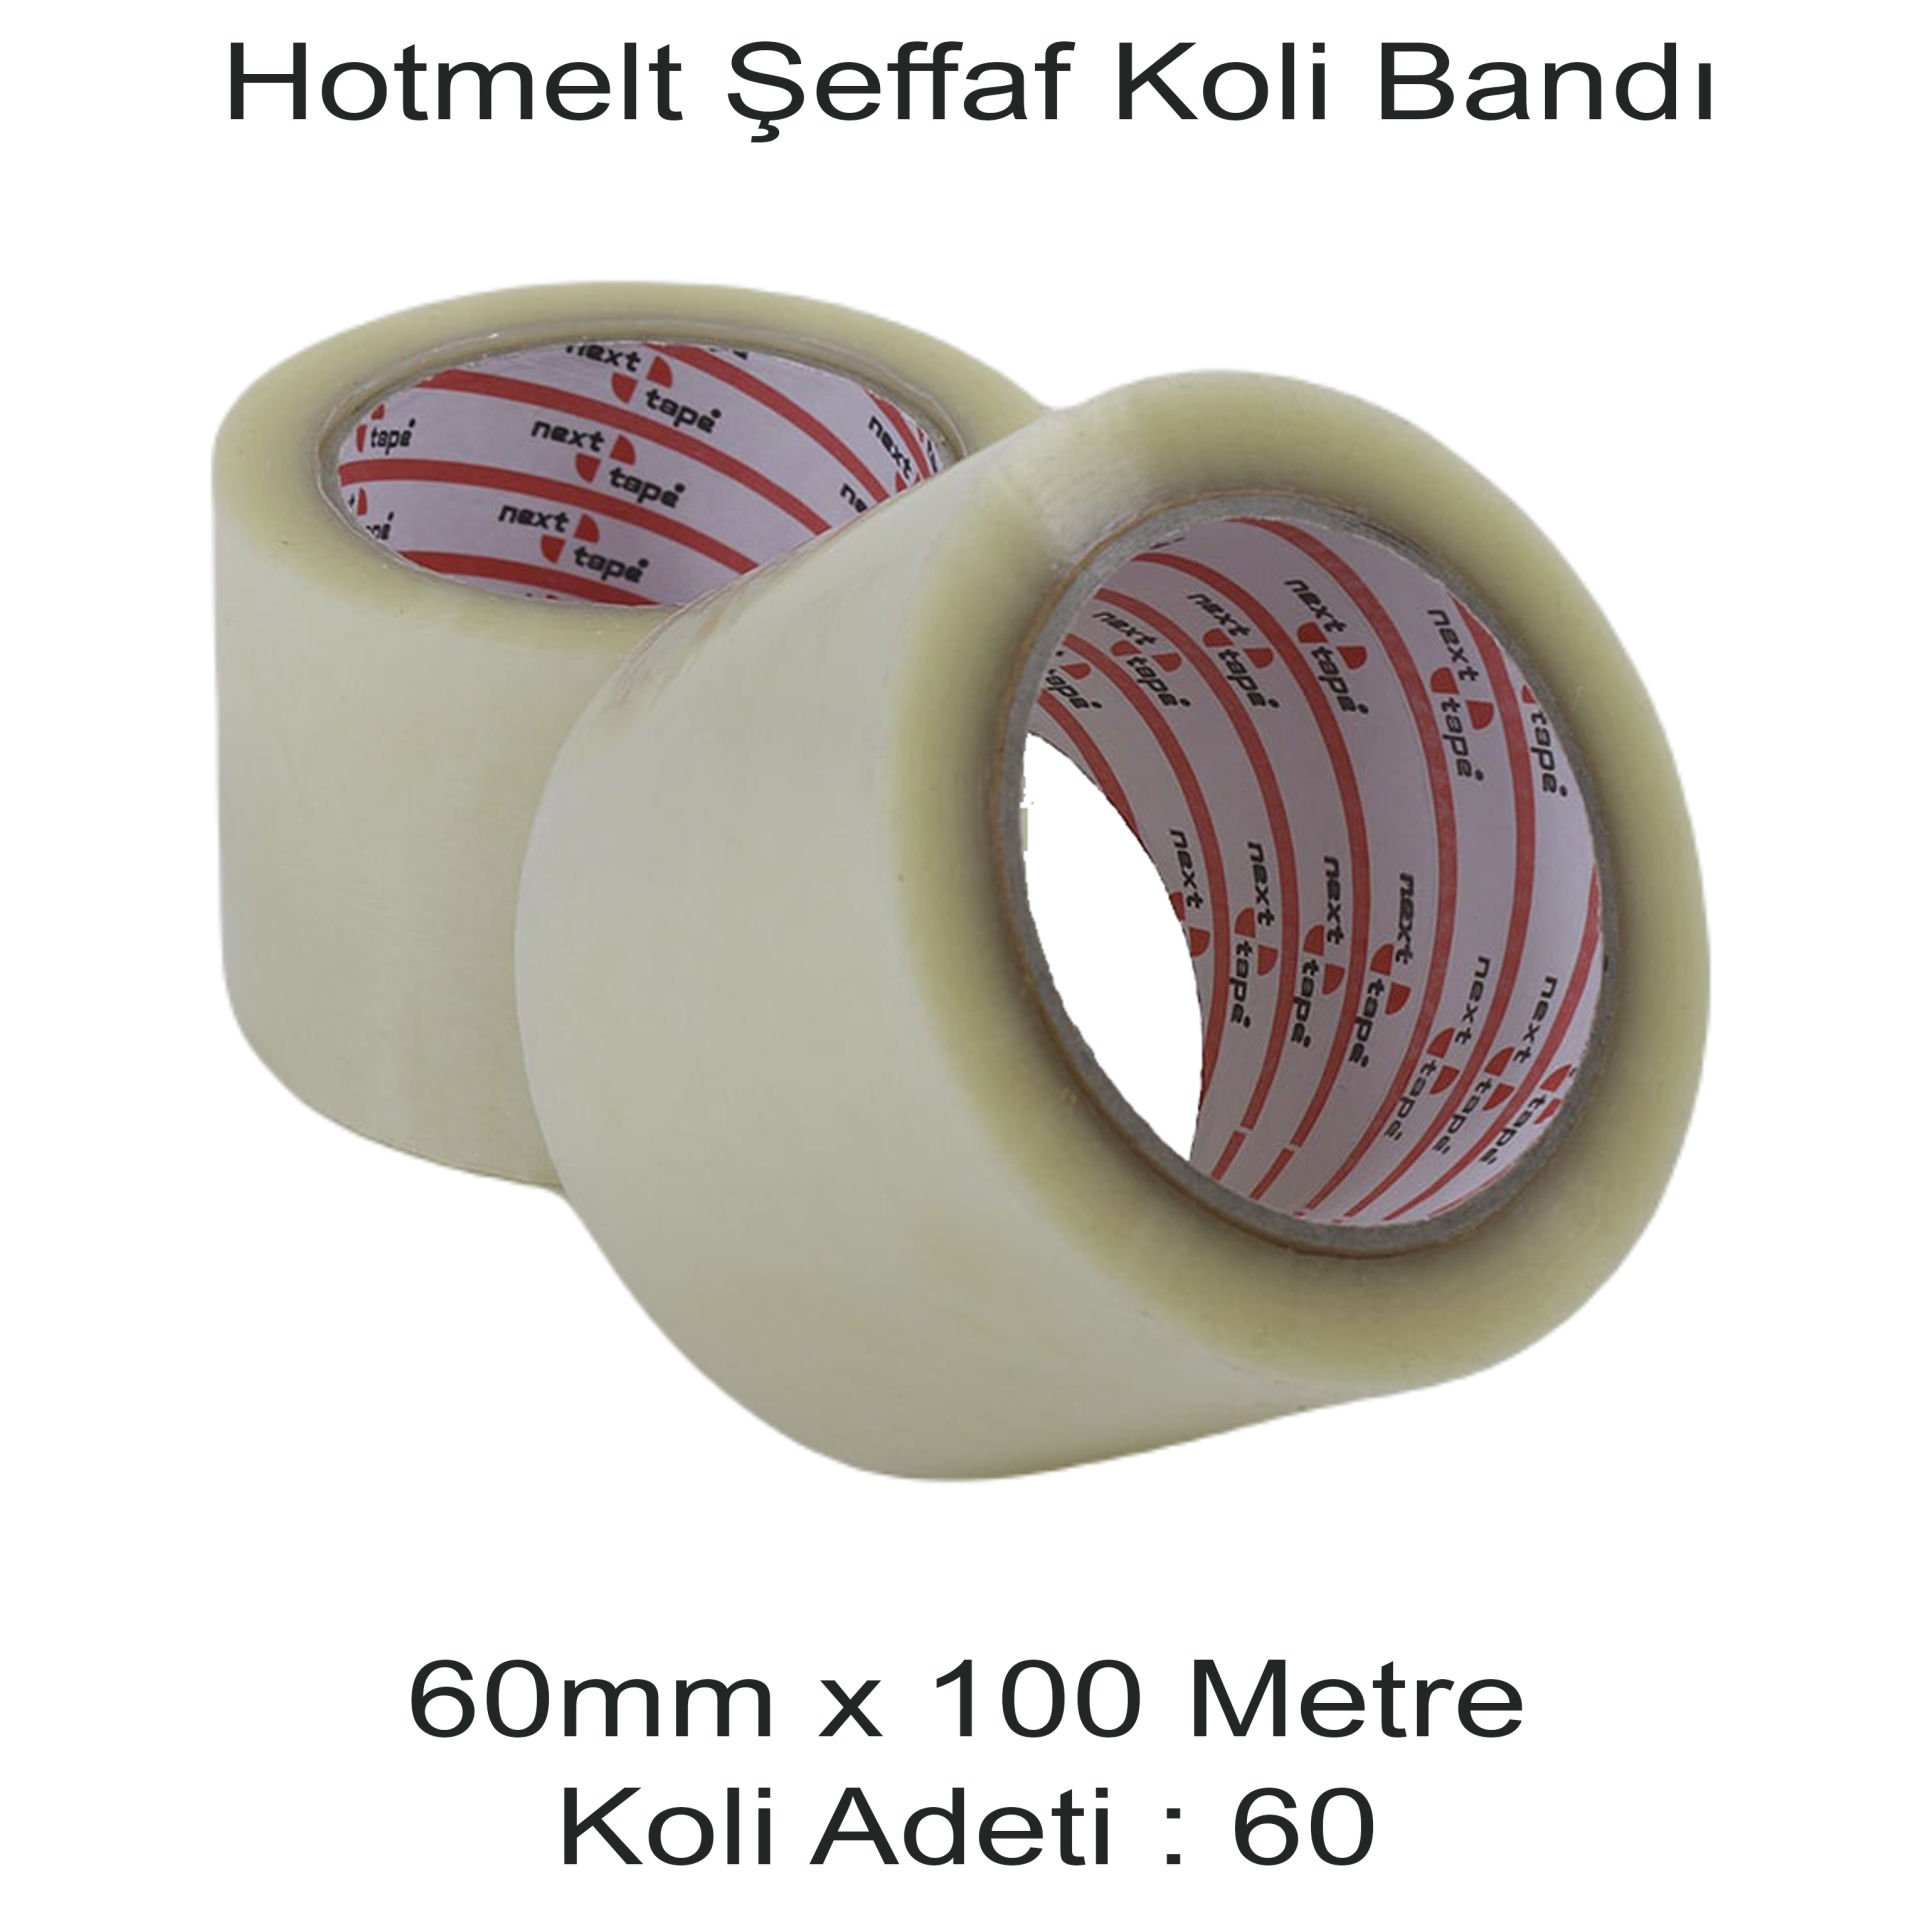 NEXT TAPE Hotmelt Şeffaf Koli Bandı 60mm x 100 Metre (60 ADET)